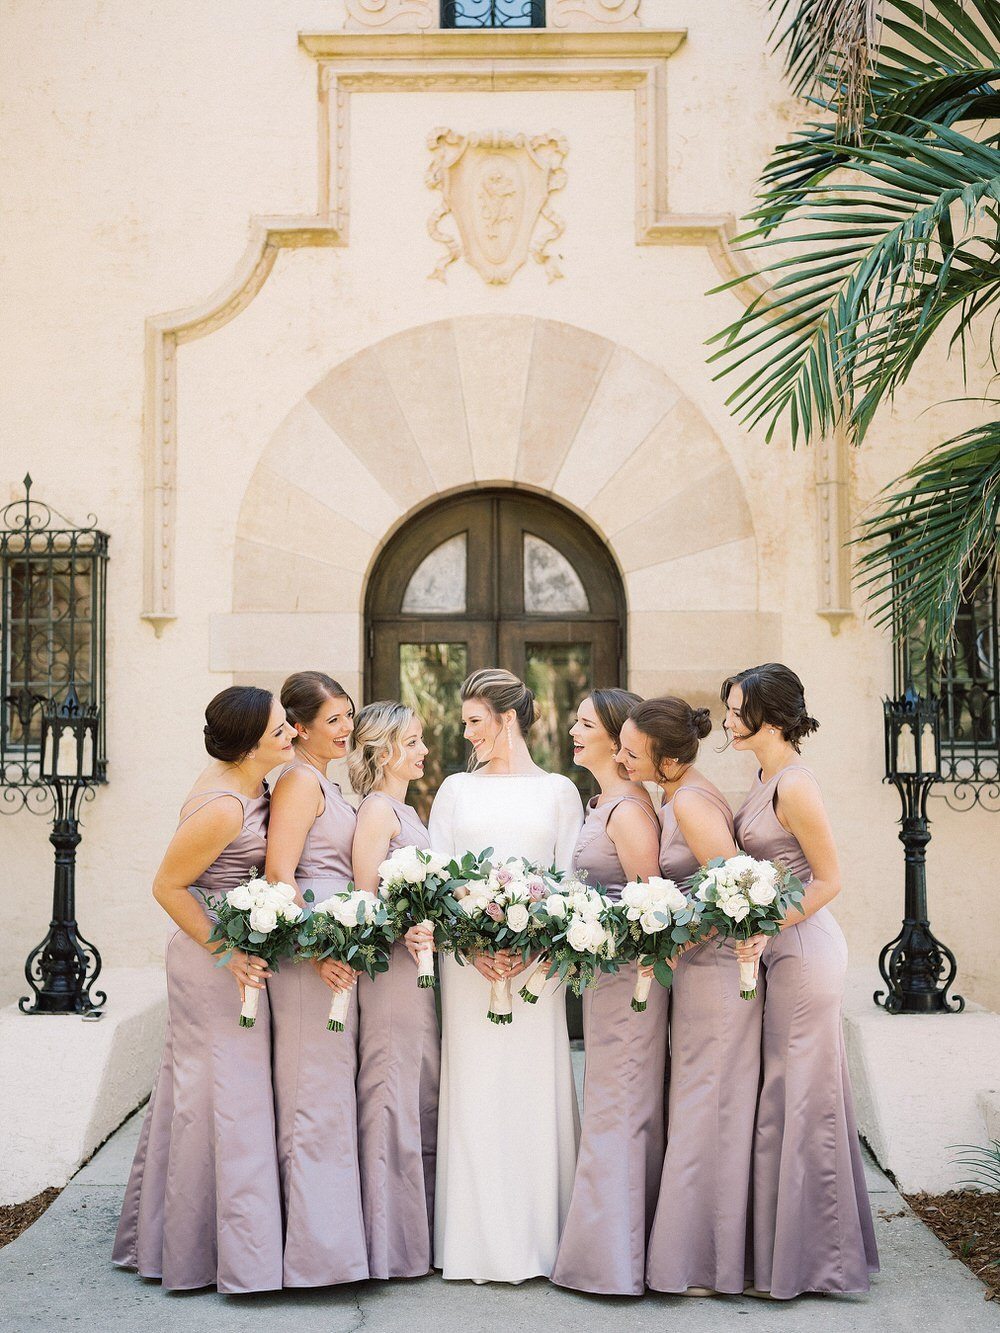 Elegant Sarasota Wedding Full of Romance and Poise ⋆ Ruffled